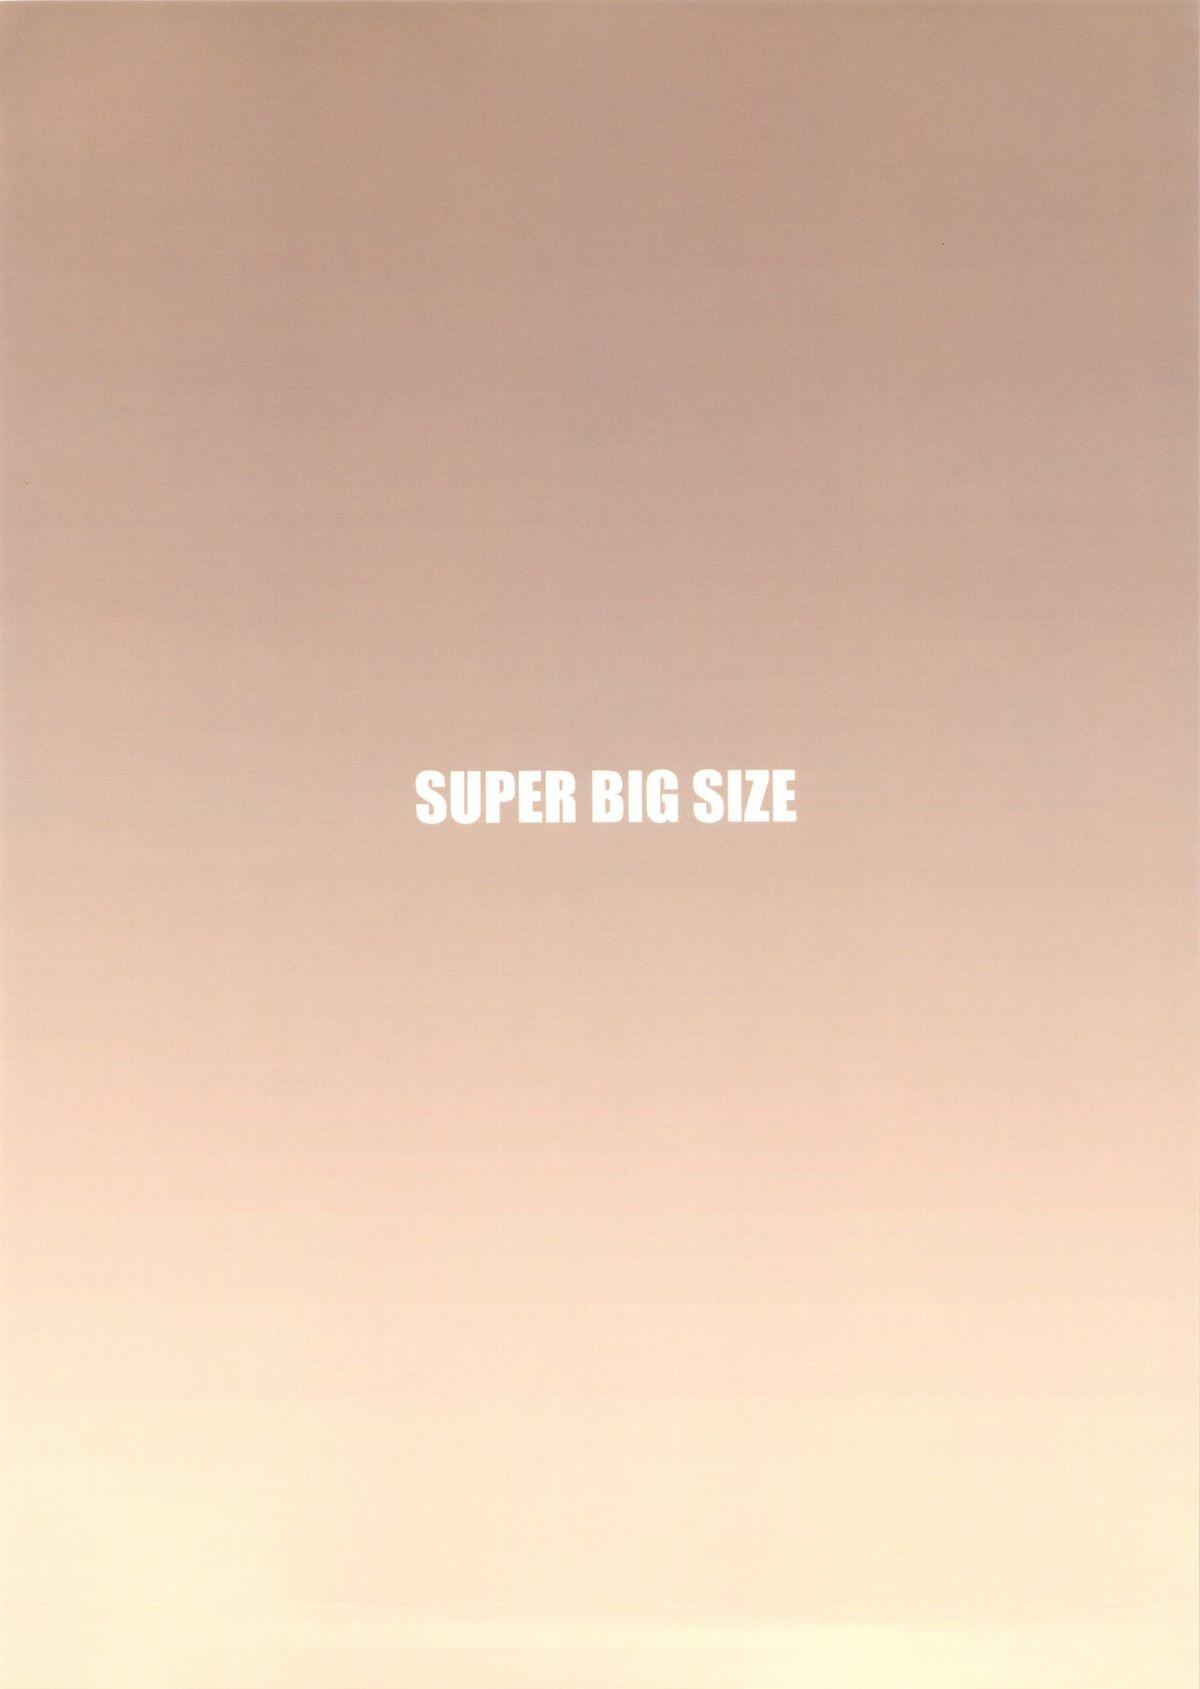 SUPER BIG SIZE! 33